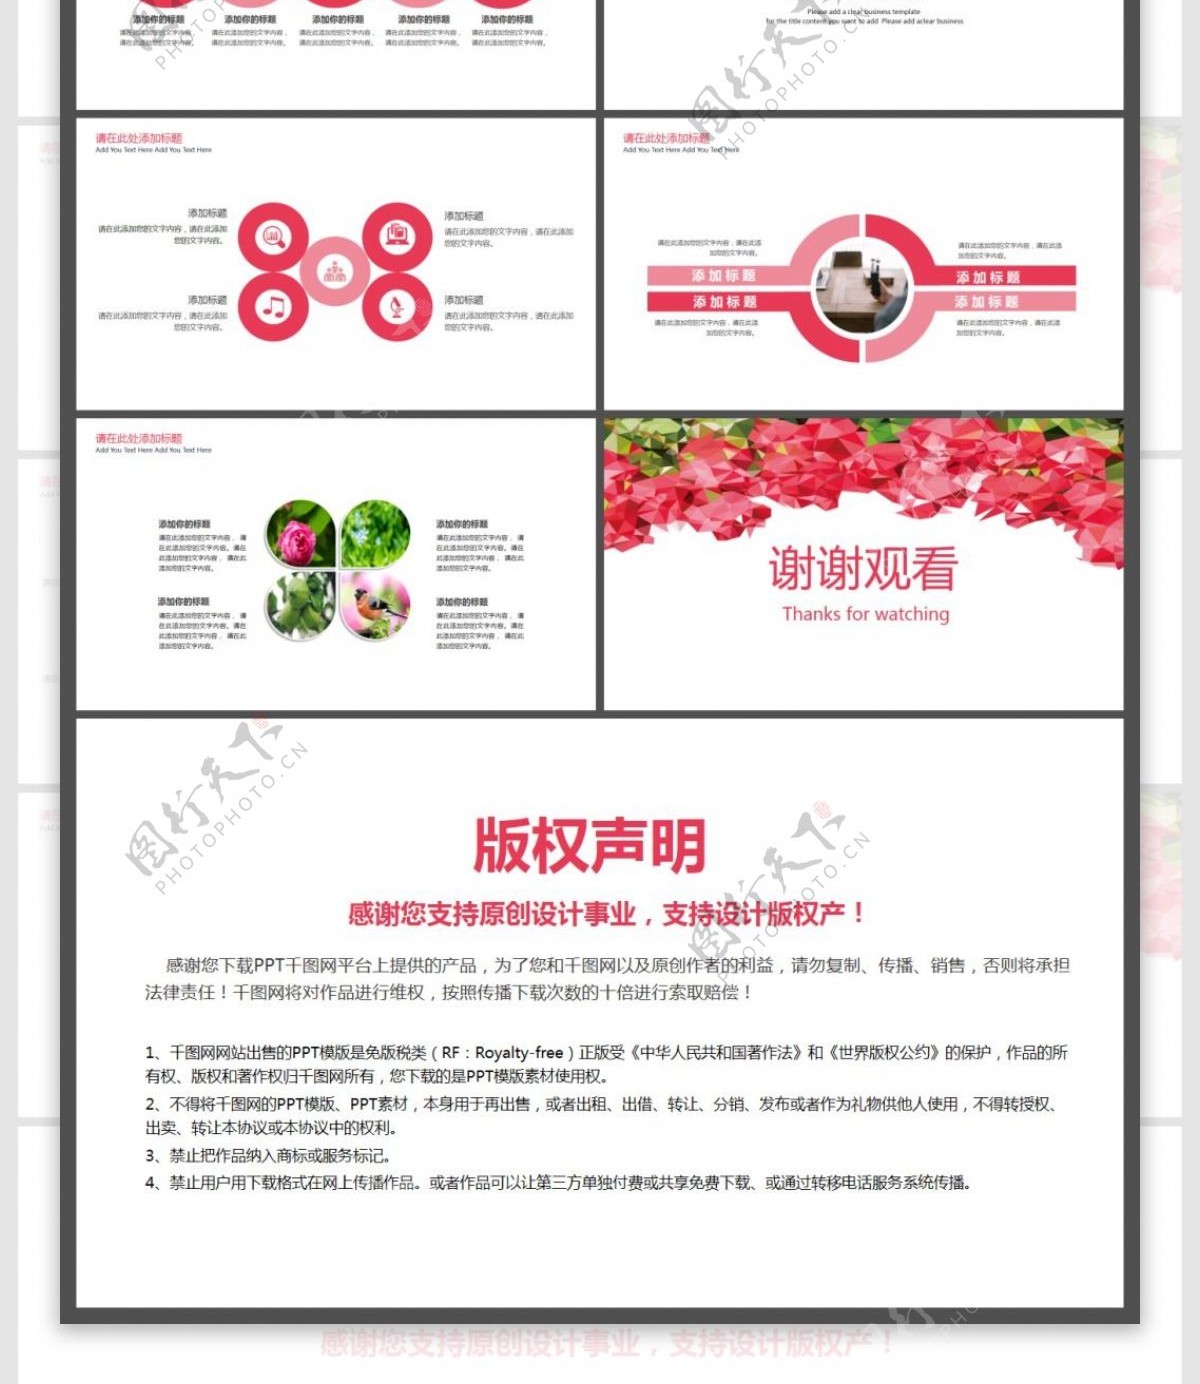 红色矢量玫瑰花创意清晰简约商务模板PPT